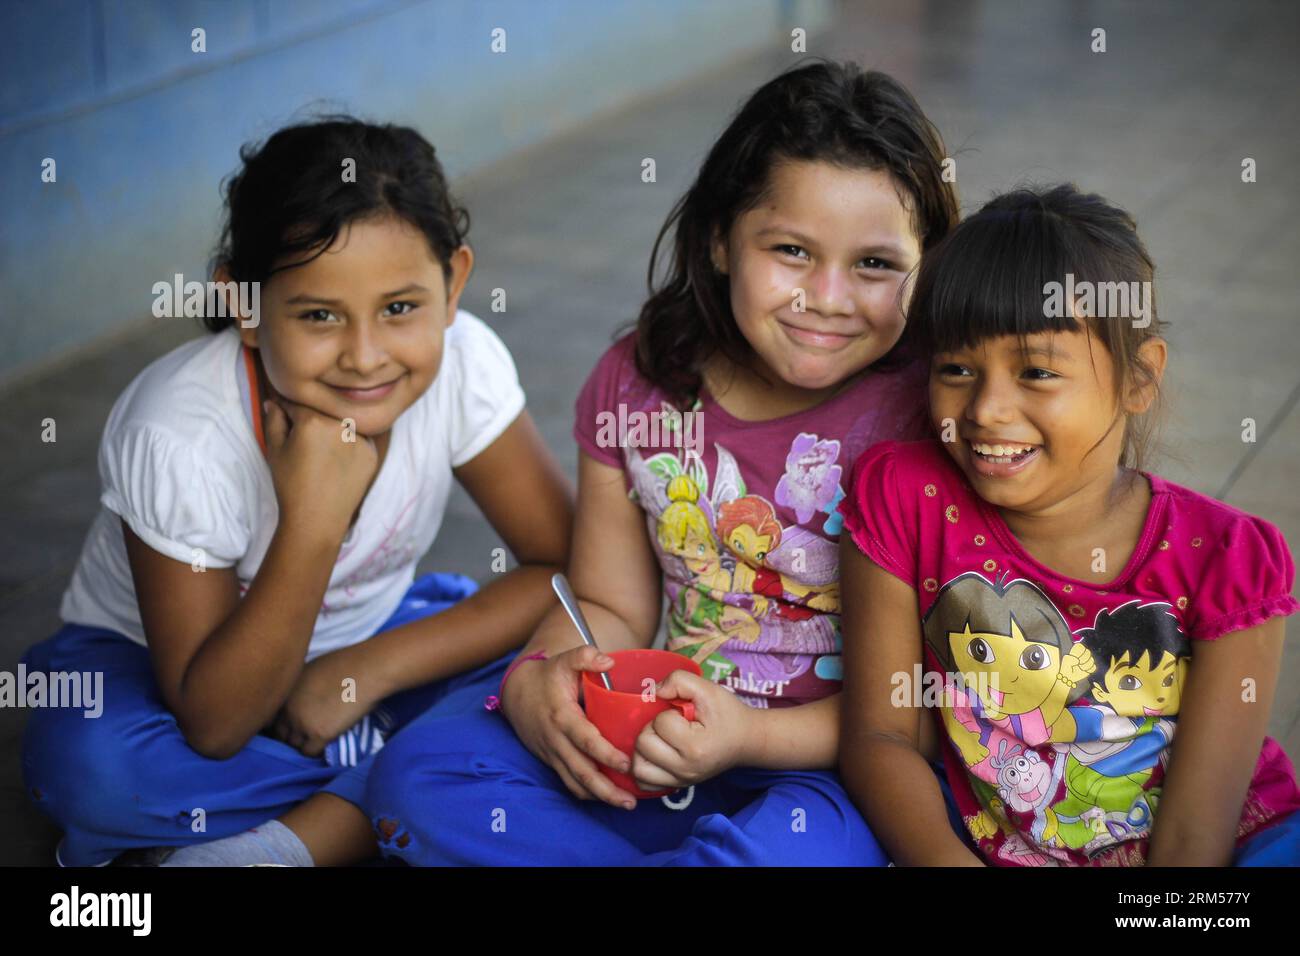 Bildnummer: 60590888 Datum: 10.10.2013 Copyright: Imago/Xinhua SUCHITOTO, (Xinhua) -- Foto tomada el 10 de octubre de 2013, muestra a chicas sonriendo a fotógrafos en una escuela pública en la ciudad de Suchitoto, 44km al norte de San Salvador, capital de El Salvador. La Asamblea General de las Naciones Unidas (AGNU) adoptó en 2011 una resolución para declarar el 11 de octubre como el Día Internacional de la Niña, para reconocer y proteger los derechos de las niñas. (Xinhua/Oscar Rivera) EL SALVADOR-SUCHITOTO-SOCIEDAD-NIÑAS DÍA PUBLICATIONxNOTxINxCHN Gesellschaft Kind Einheimische Mädchen Land Leute x2013 quer 60590888 Fecha 10 10 Foto de stock